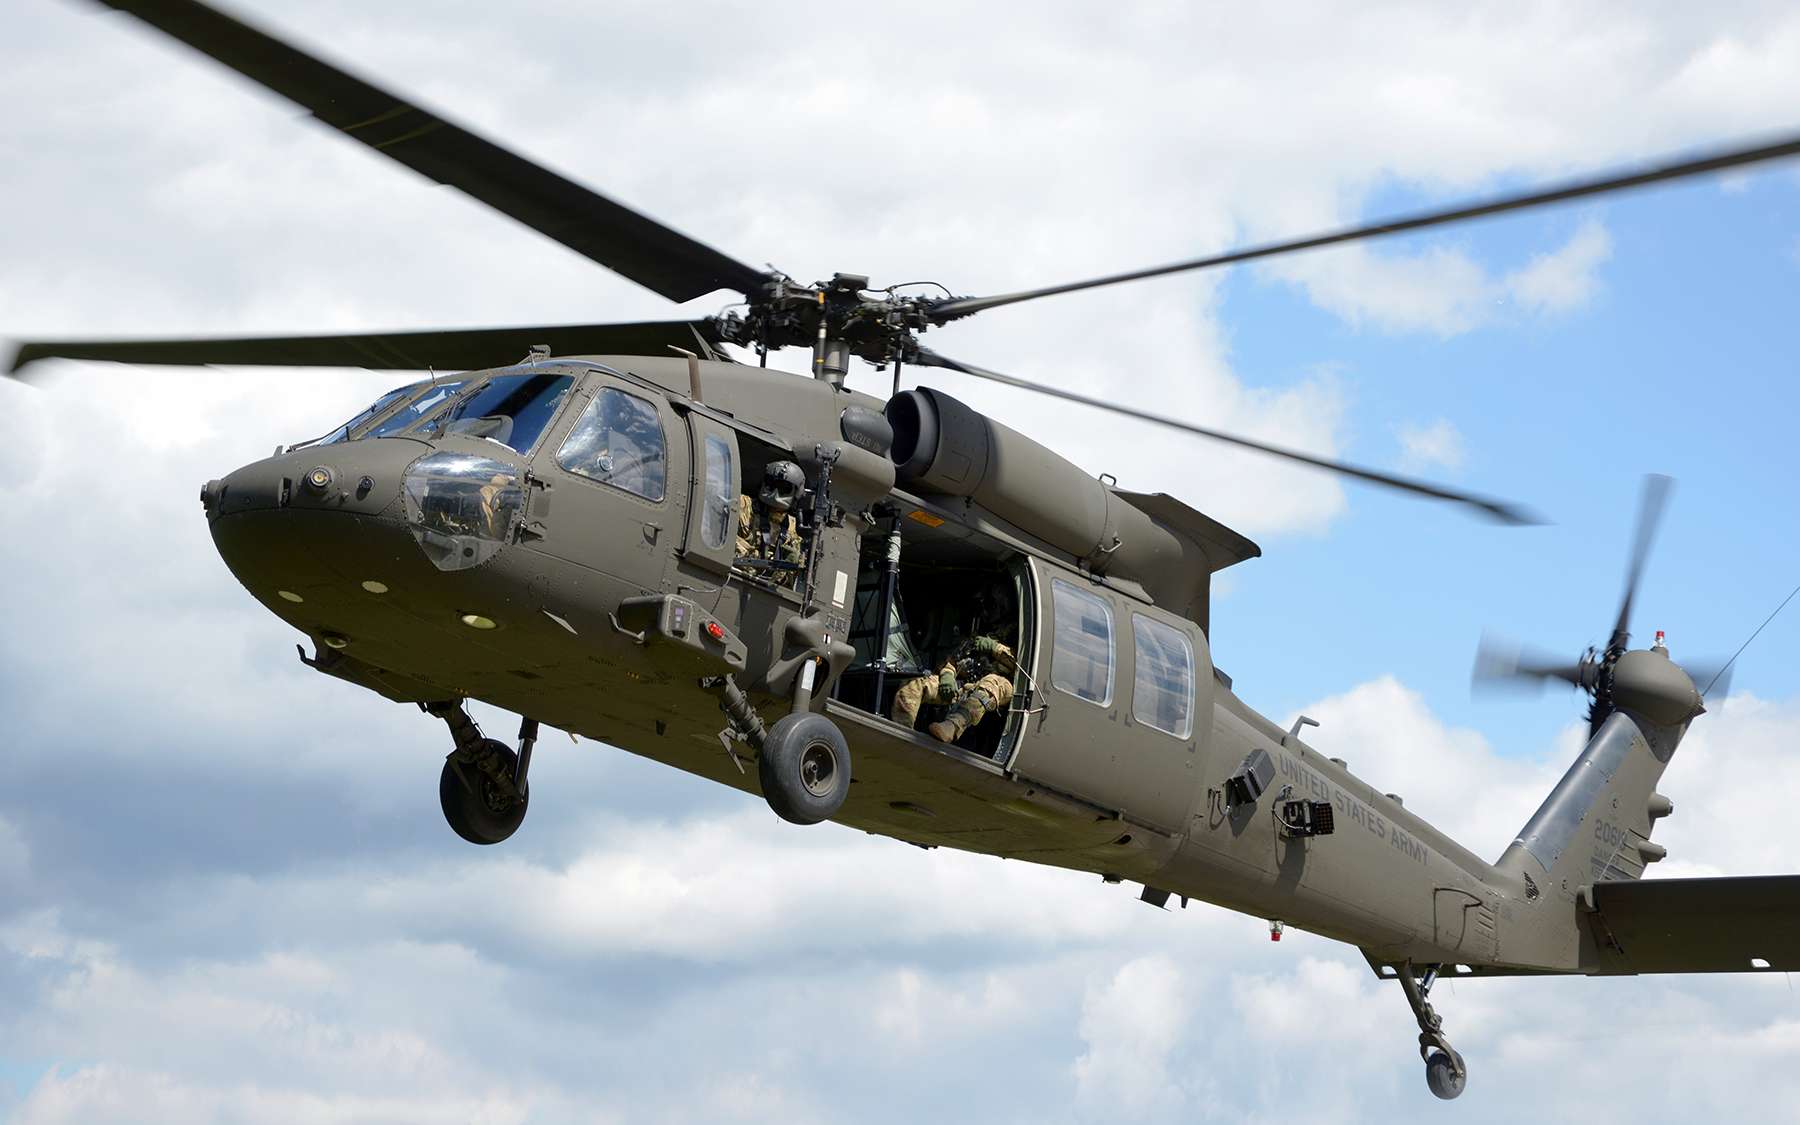 Les pilotes des hélicoptères UH-60 Black Hawk utiliseront bientôt des casques de réalité augmentée intégrant un assistant intelligent. © Lockheed Martin